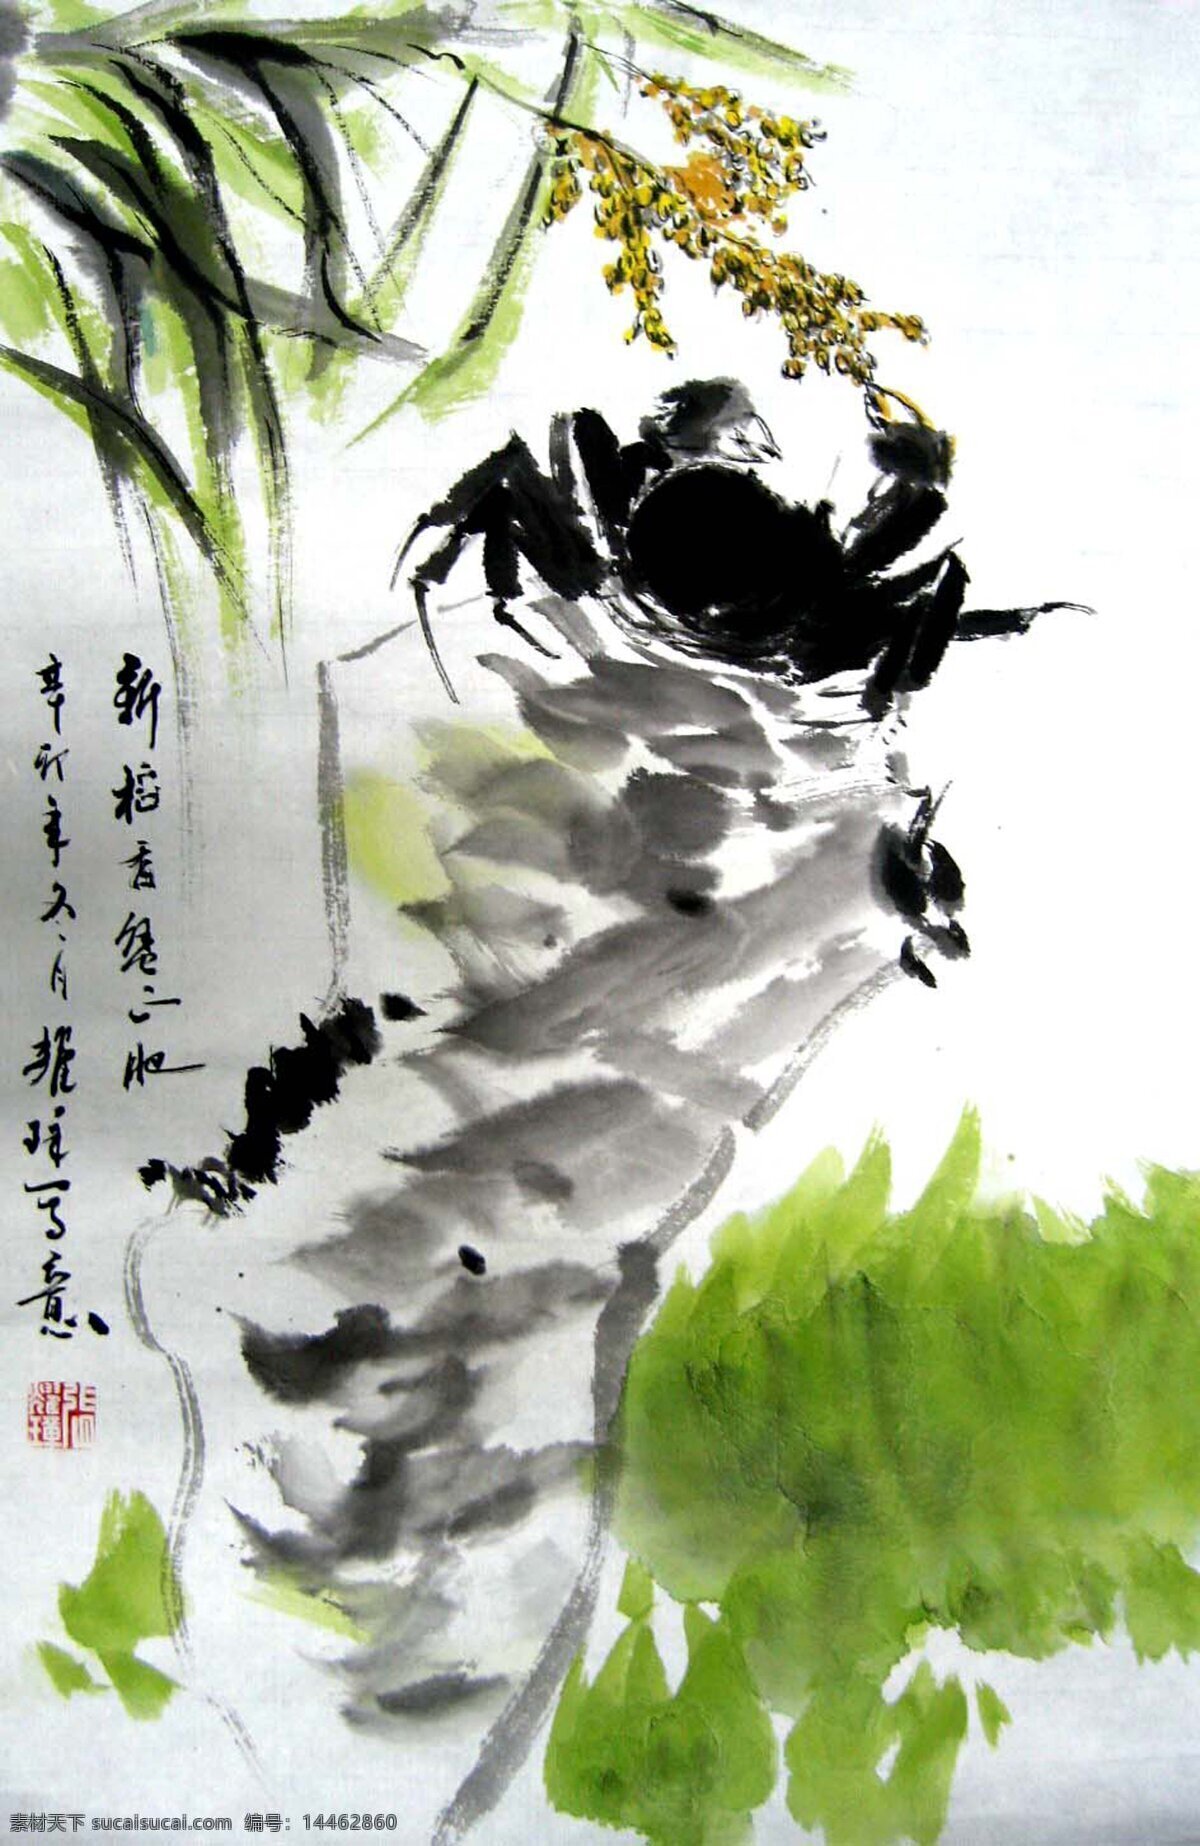 自然风光 插画 油画 装饰画 国画 无框画 手绘 素描 底纹背景 彩绘 中国风 抽象 艺术 书画文字 文化艺术